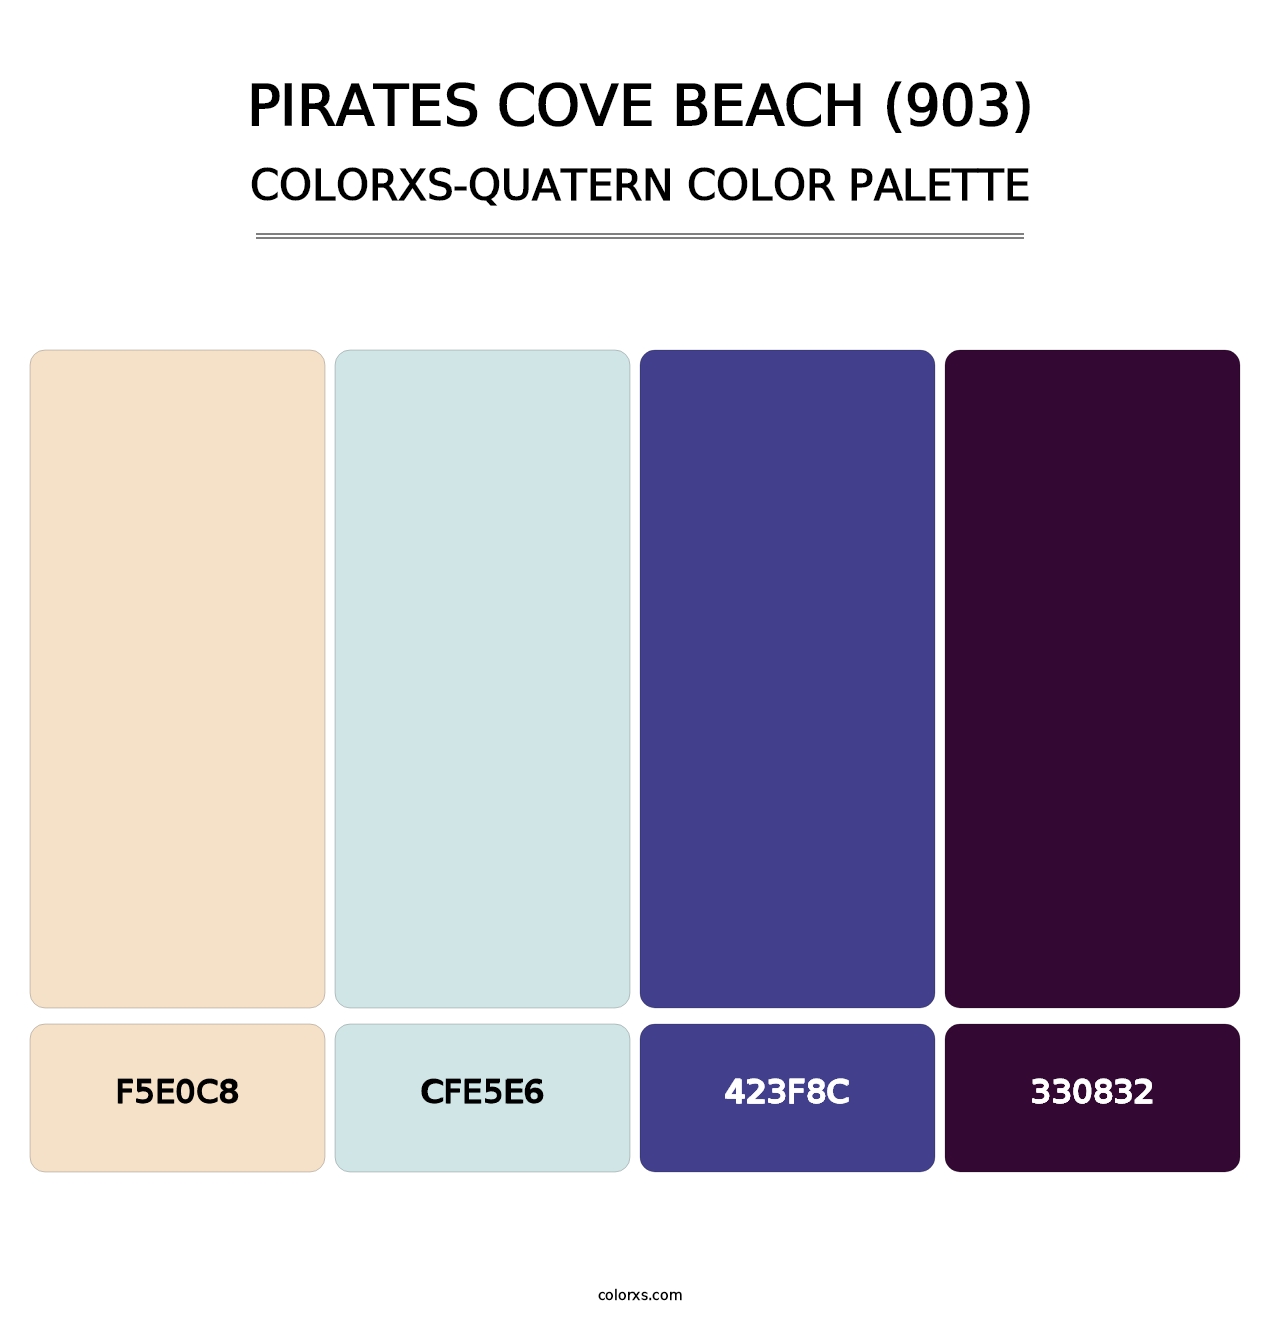 Pirates Cove Beach (903) - Colorxs Quatern Palette